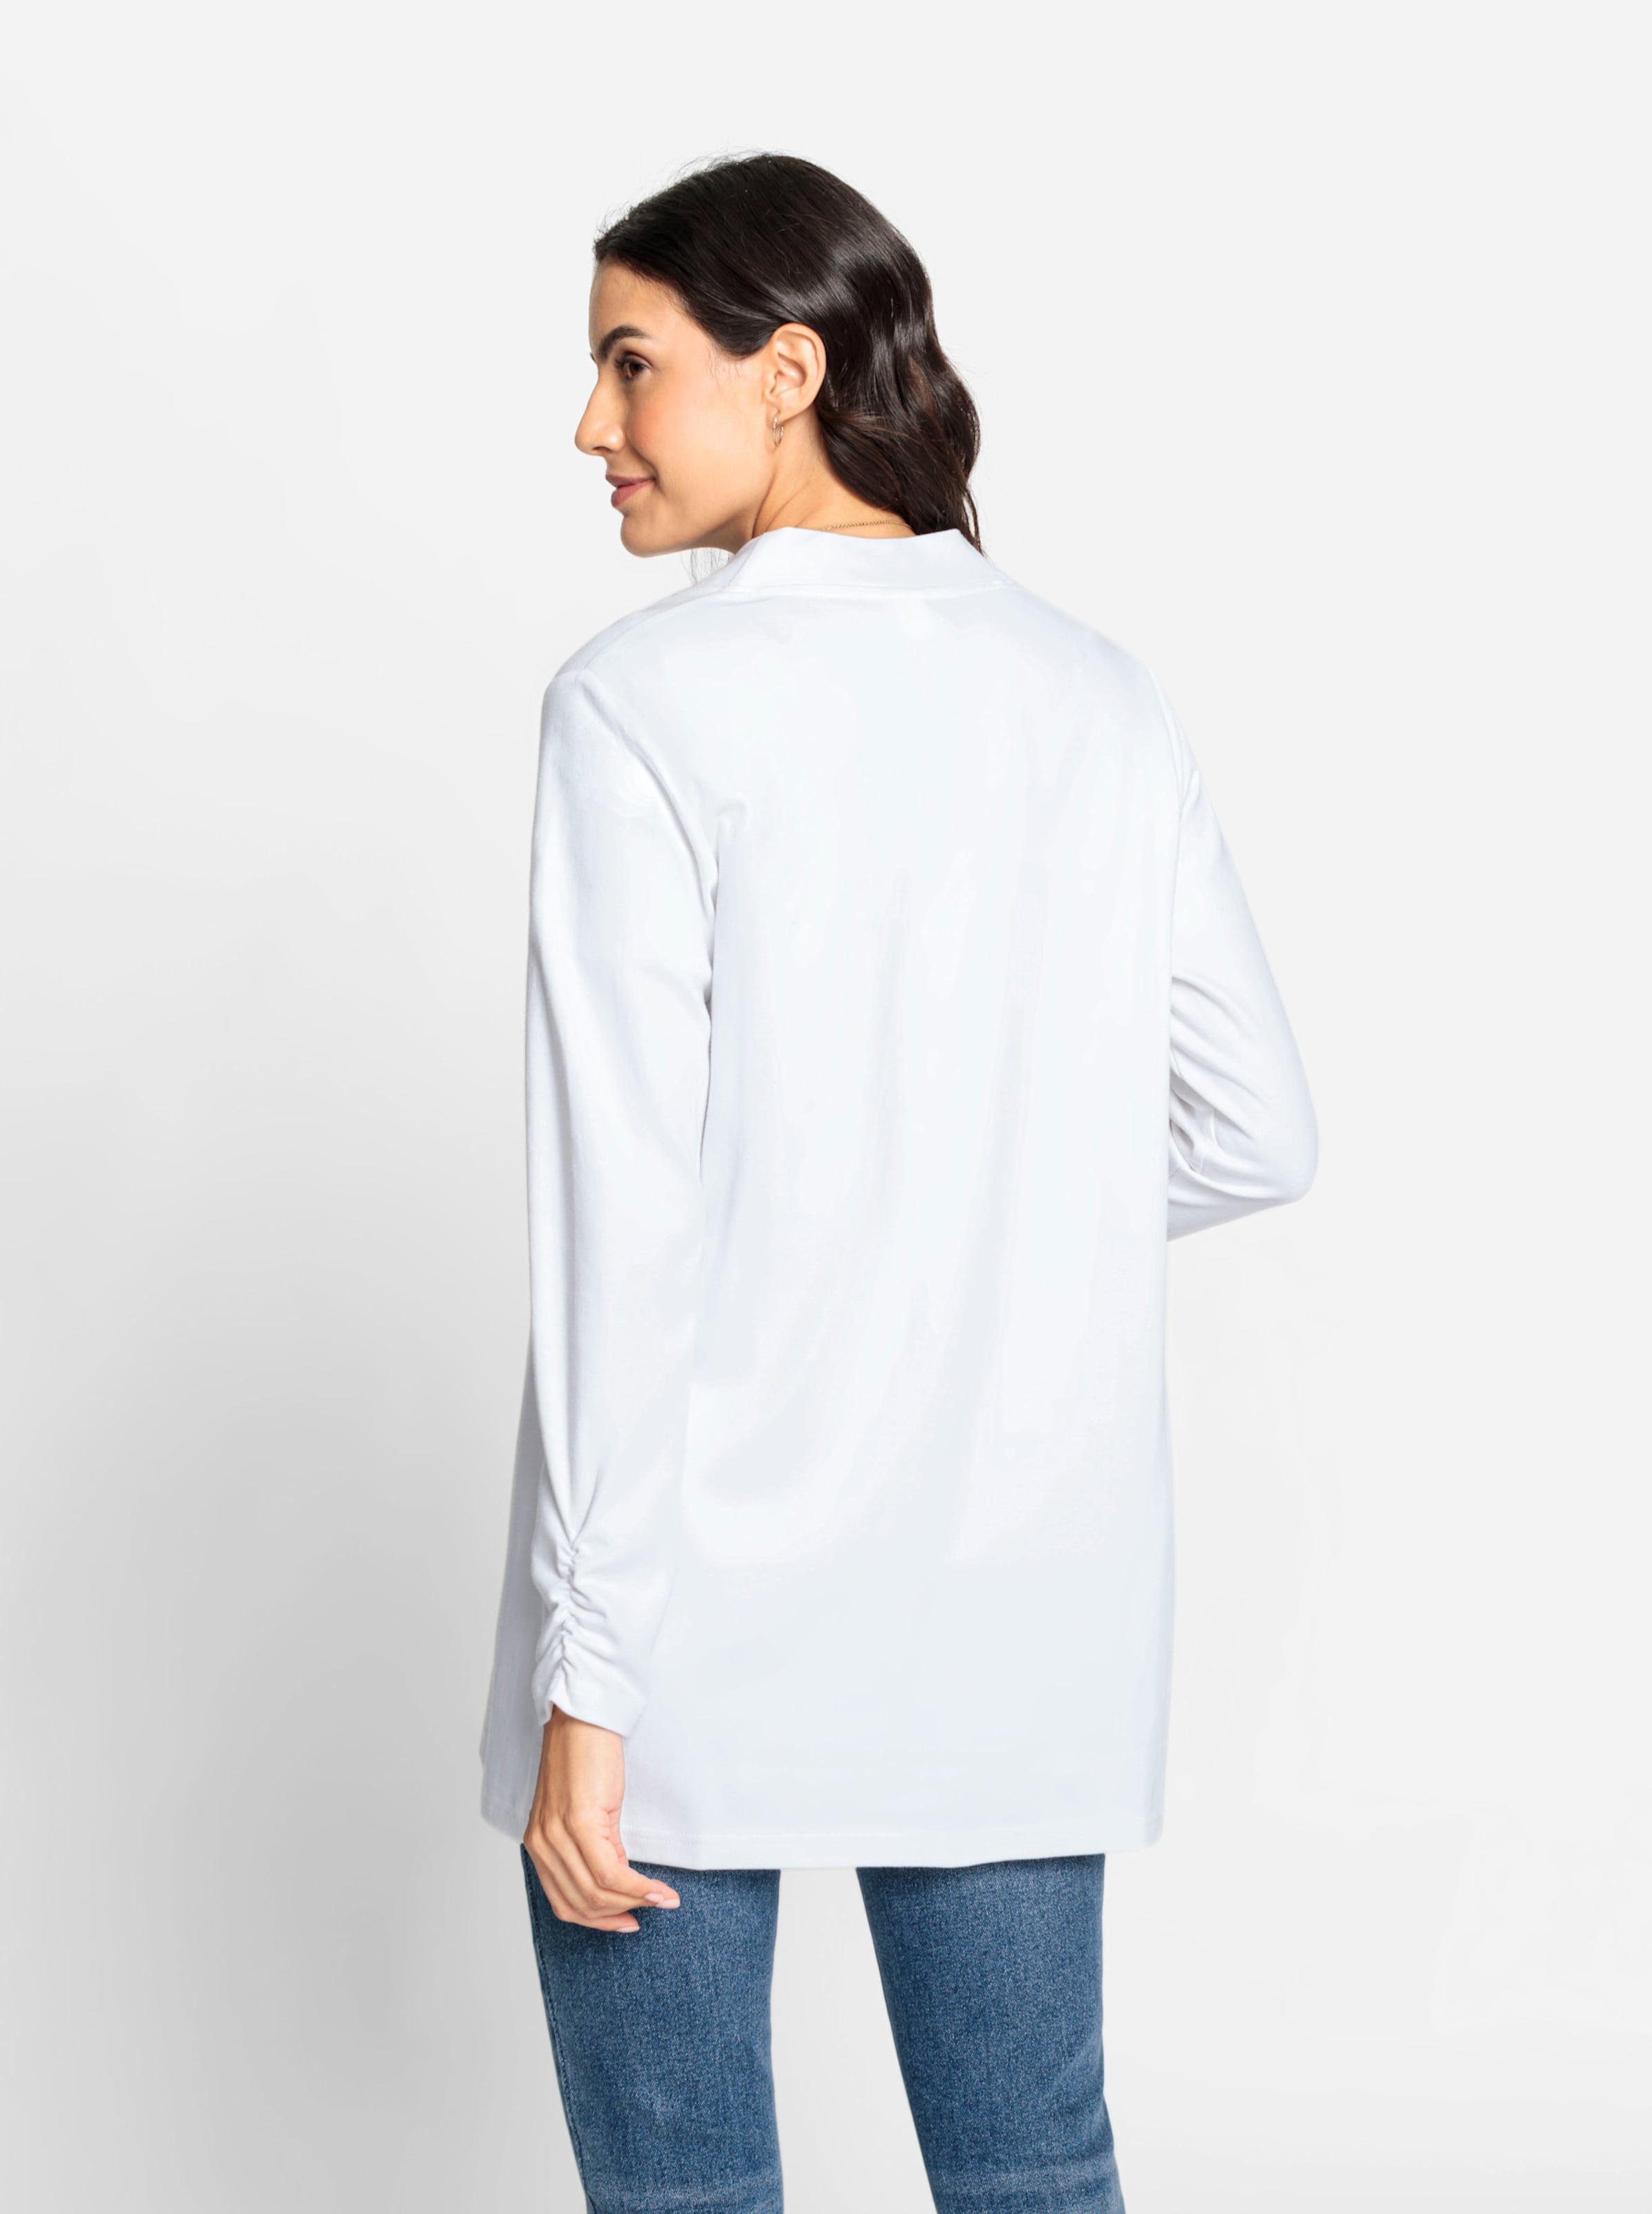 Abschluss günstig Kaufen-Shirtjacke in weiß von heine. Shirtjacke in weiß von heine <![CDATA[Wenn Sie nach einem Multitalent für Ihre Garderobe suchen, dann ist die Shirtjacke genau die Richtige! In offener, etwas längerer Form mit Raffung am Abschluss der langen Ärm